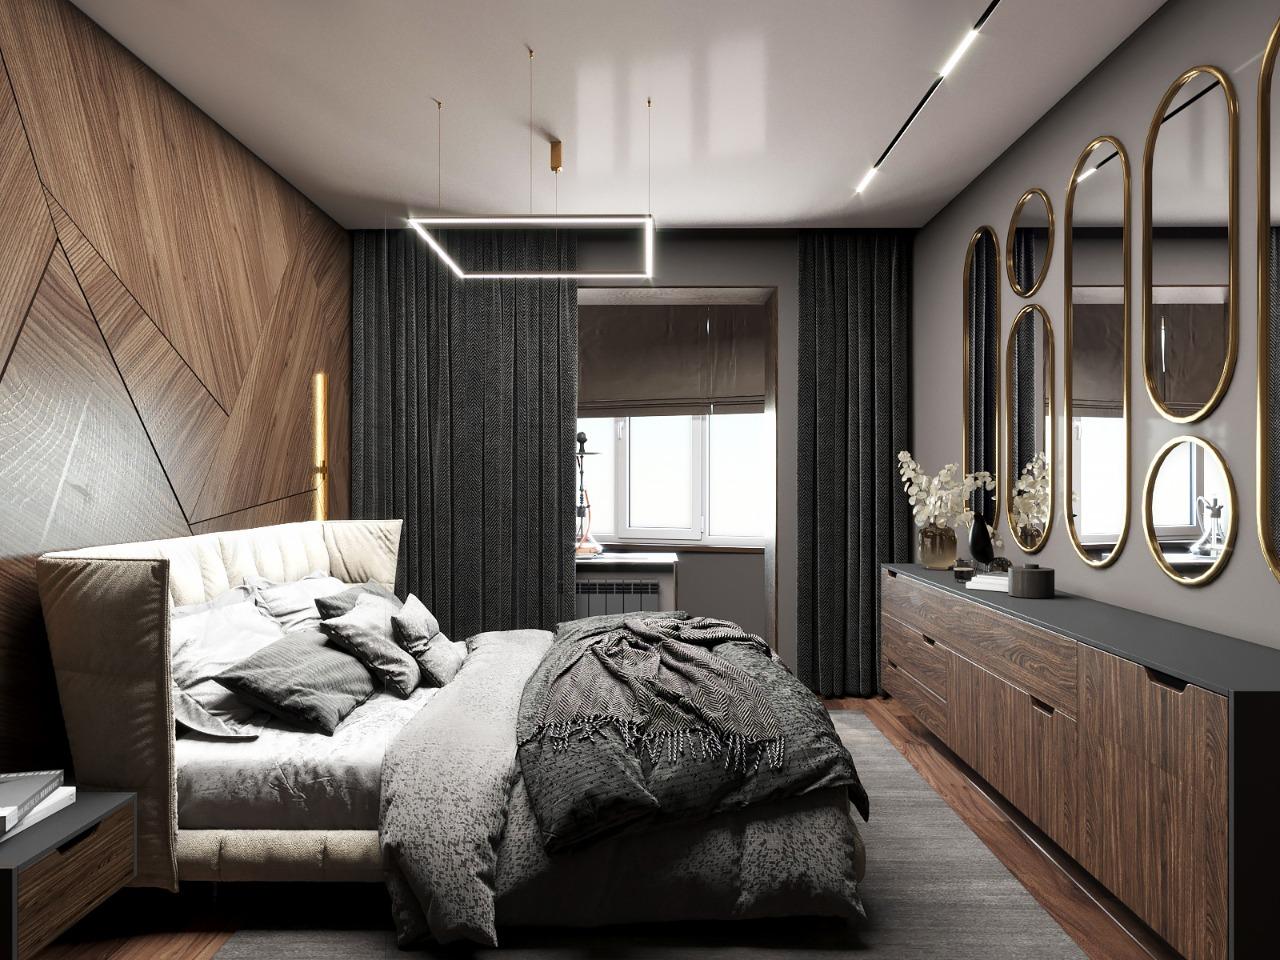 Интерьер спальни cветовыми линиями и светильниками над кроватью в стиле лофт